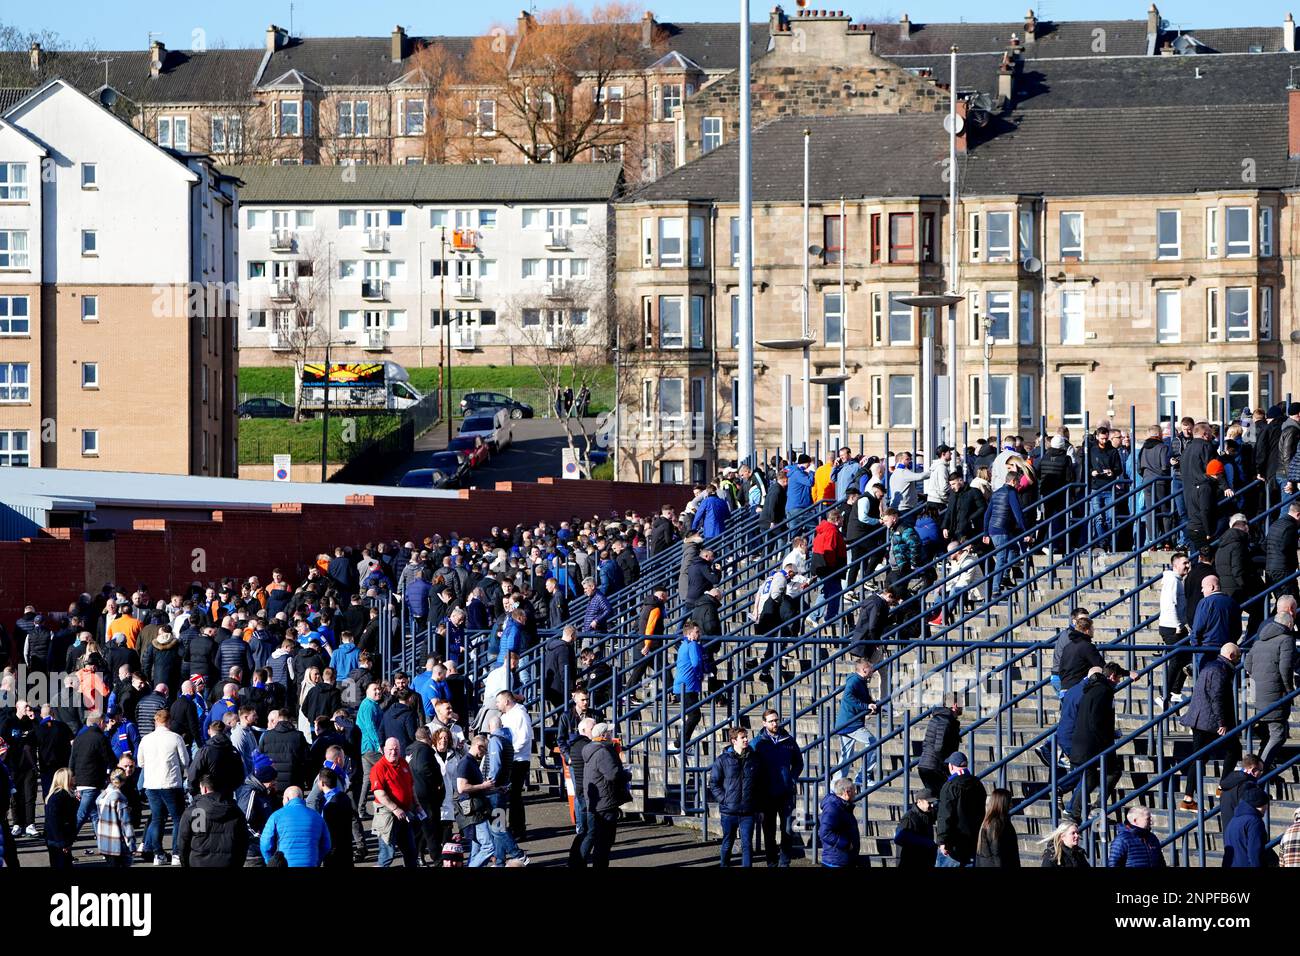 Les fans arrivent avant la finale de la coupe des sports Viaplay à Hampden Park, Glasgow. Date de la photo: Dimanche 26 février 2023. Banque D'Images